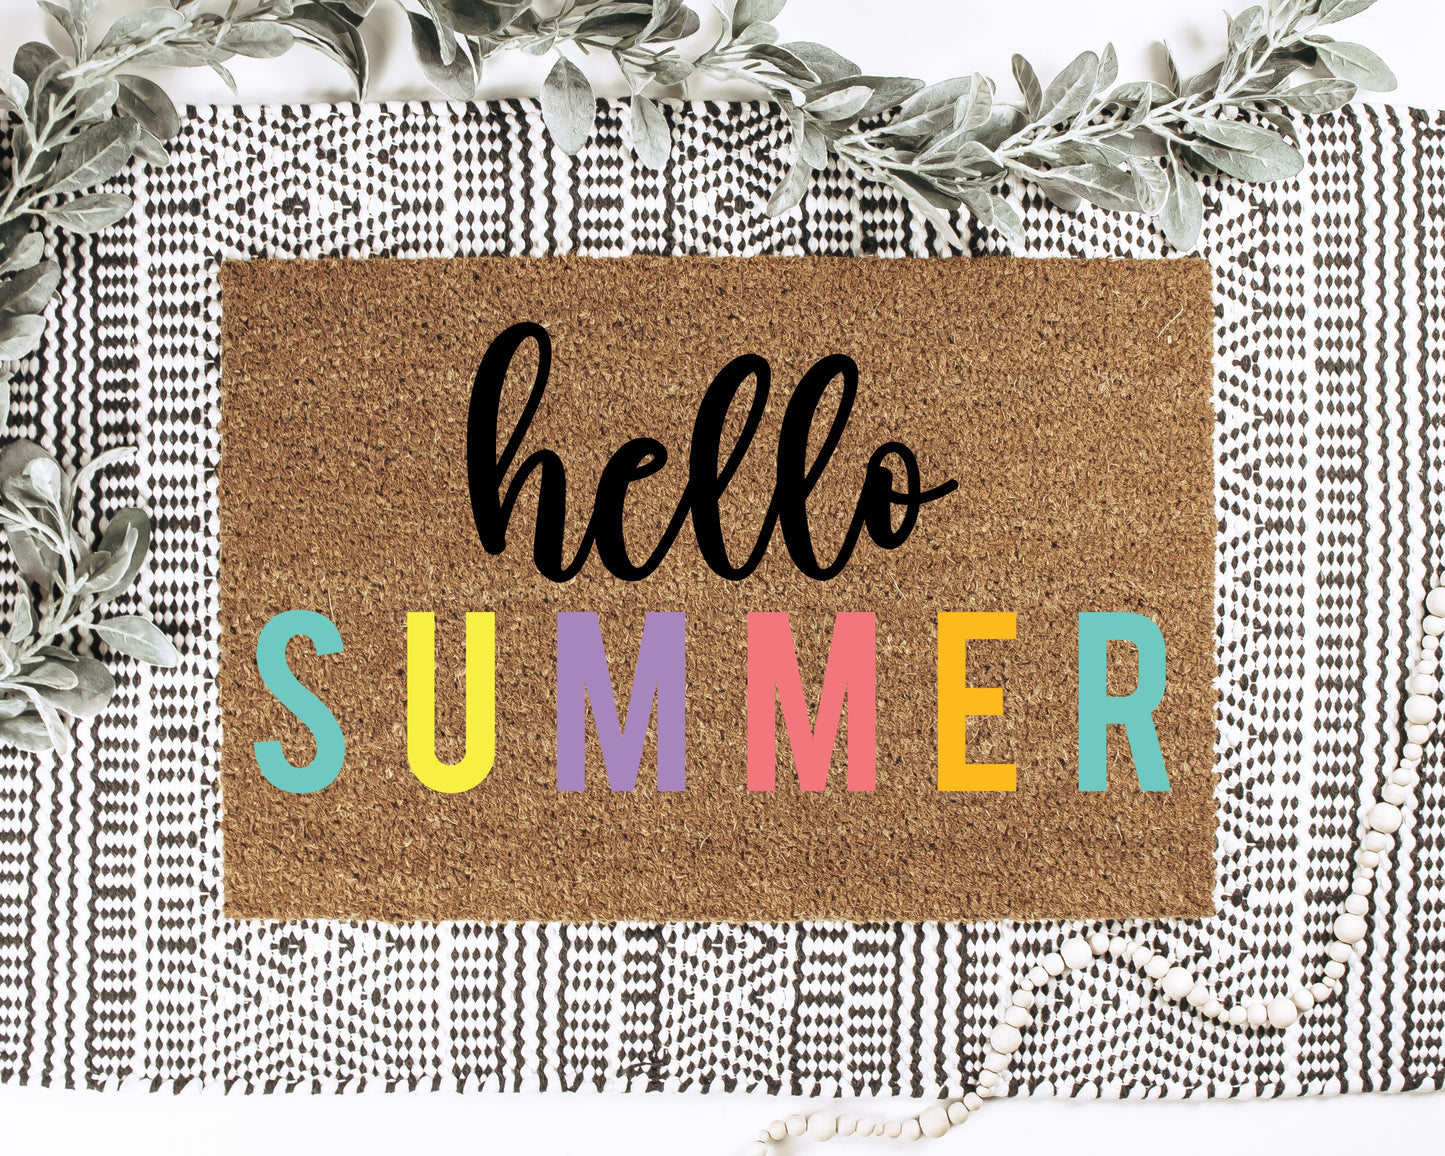 Hello Summer Doormat